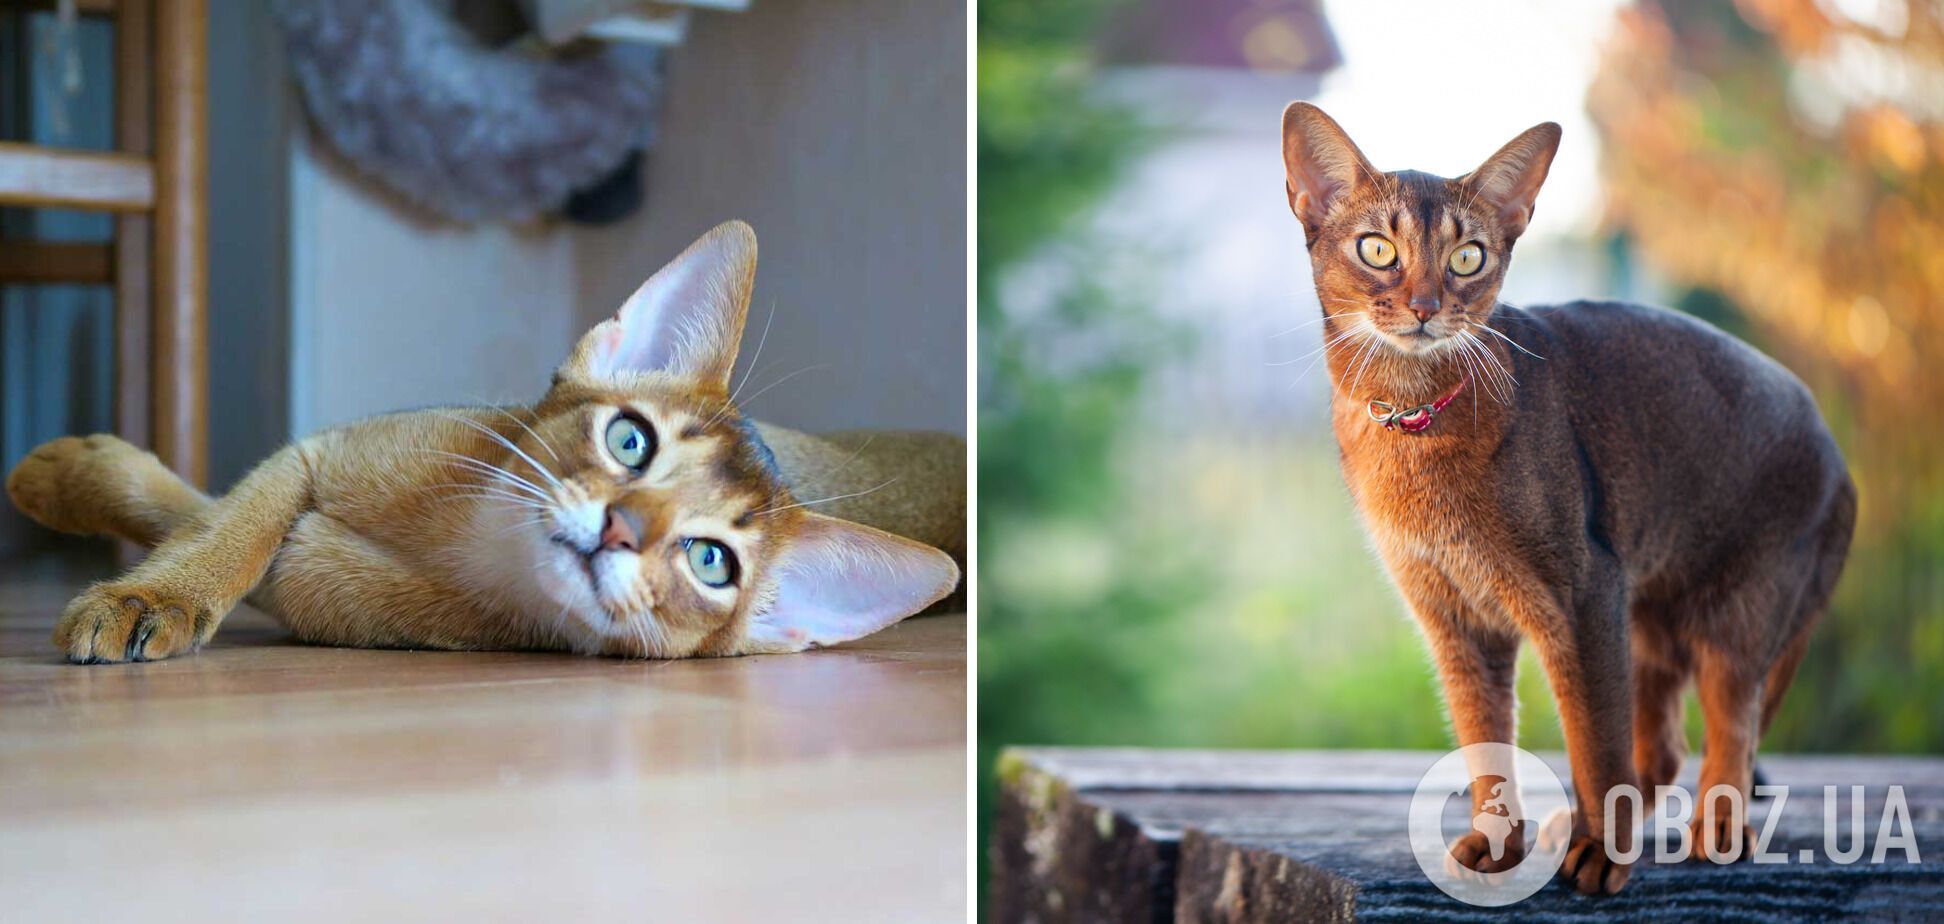 Вызывают восторг: какие породы кошек самые красивые